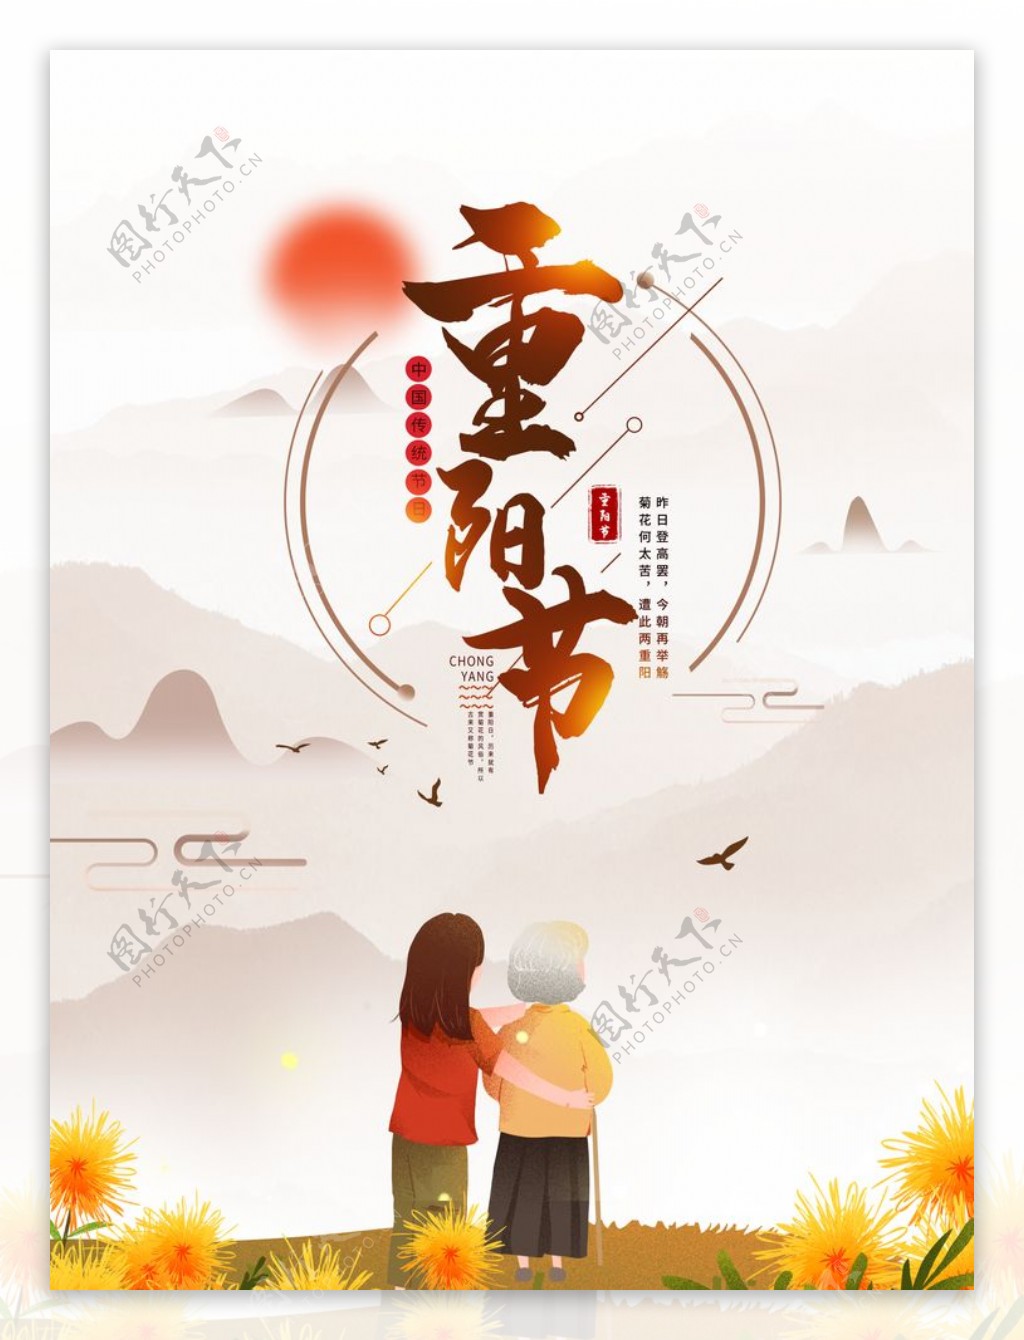 重阳节主题边框手绘菊花人物图片